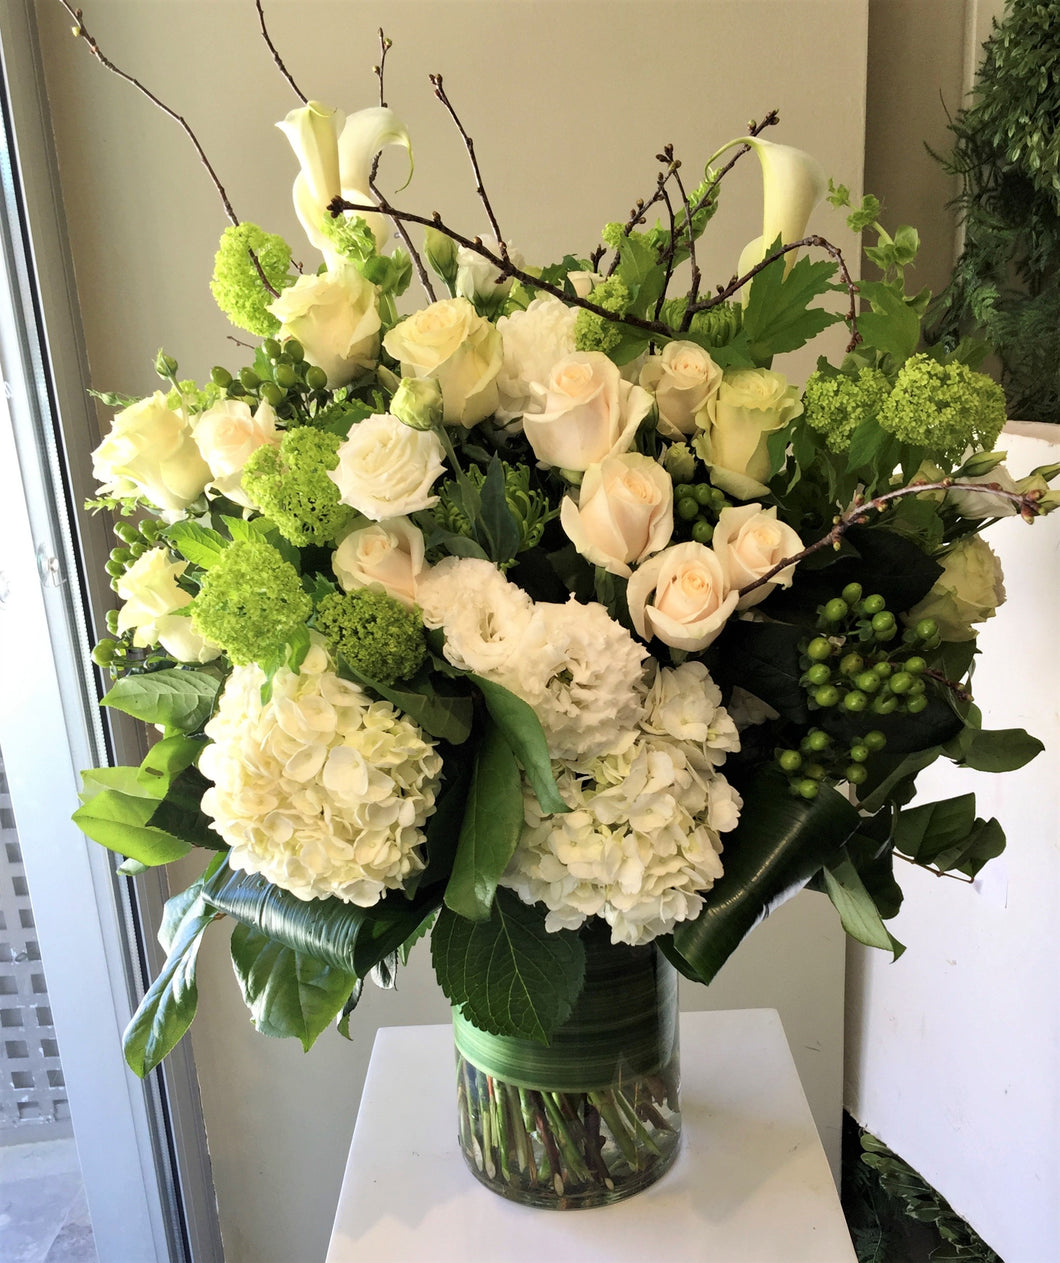 F160 - Elegant White and Green Vase Arrangement - Flowerplustoronto